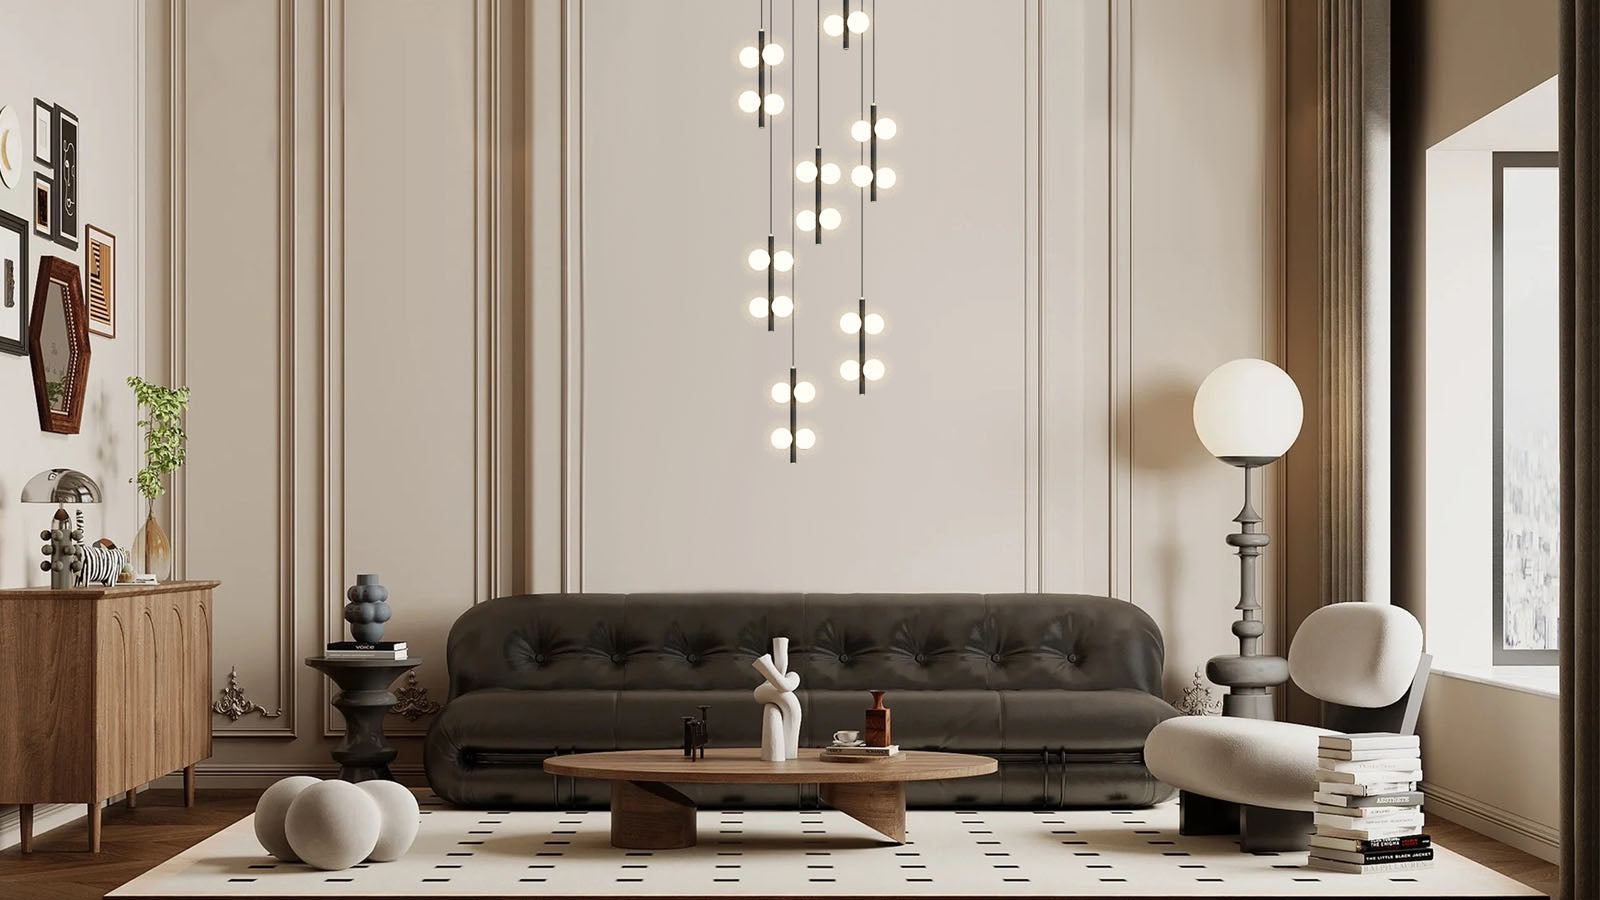 multi globe pendant lights in living room